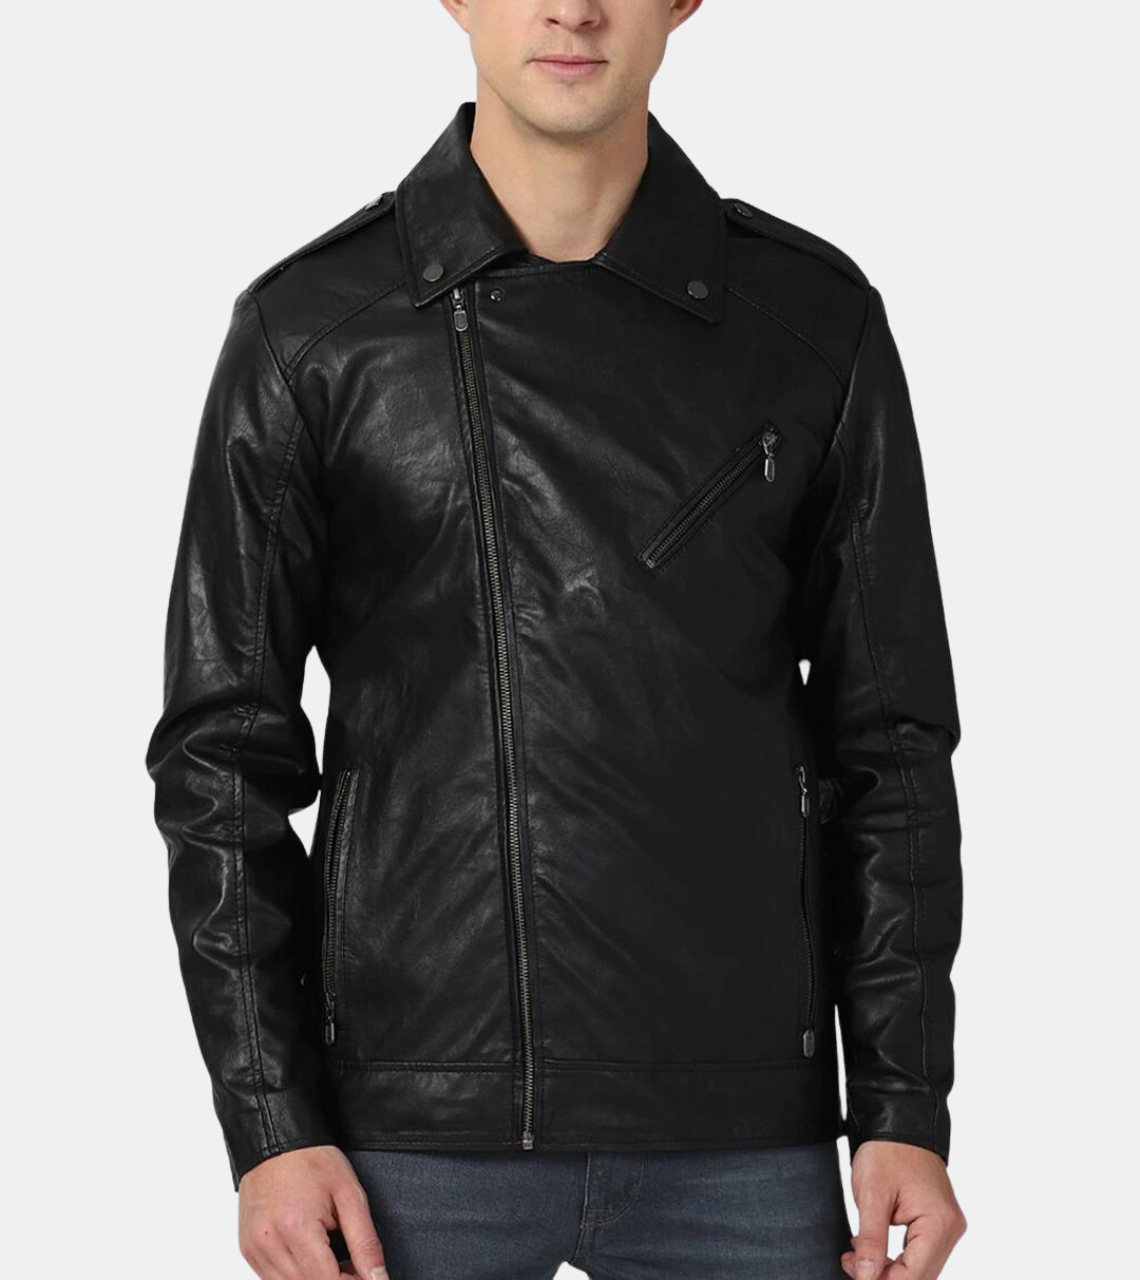 Eadwin Men's Black Biker's Leather Jacket